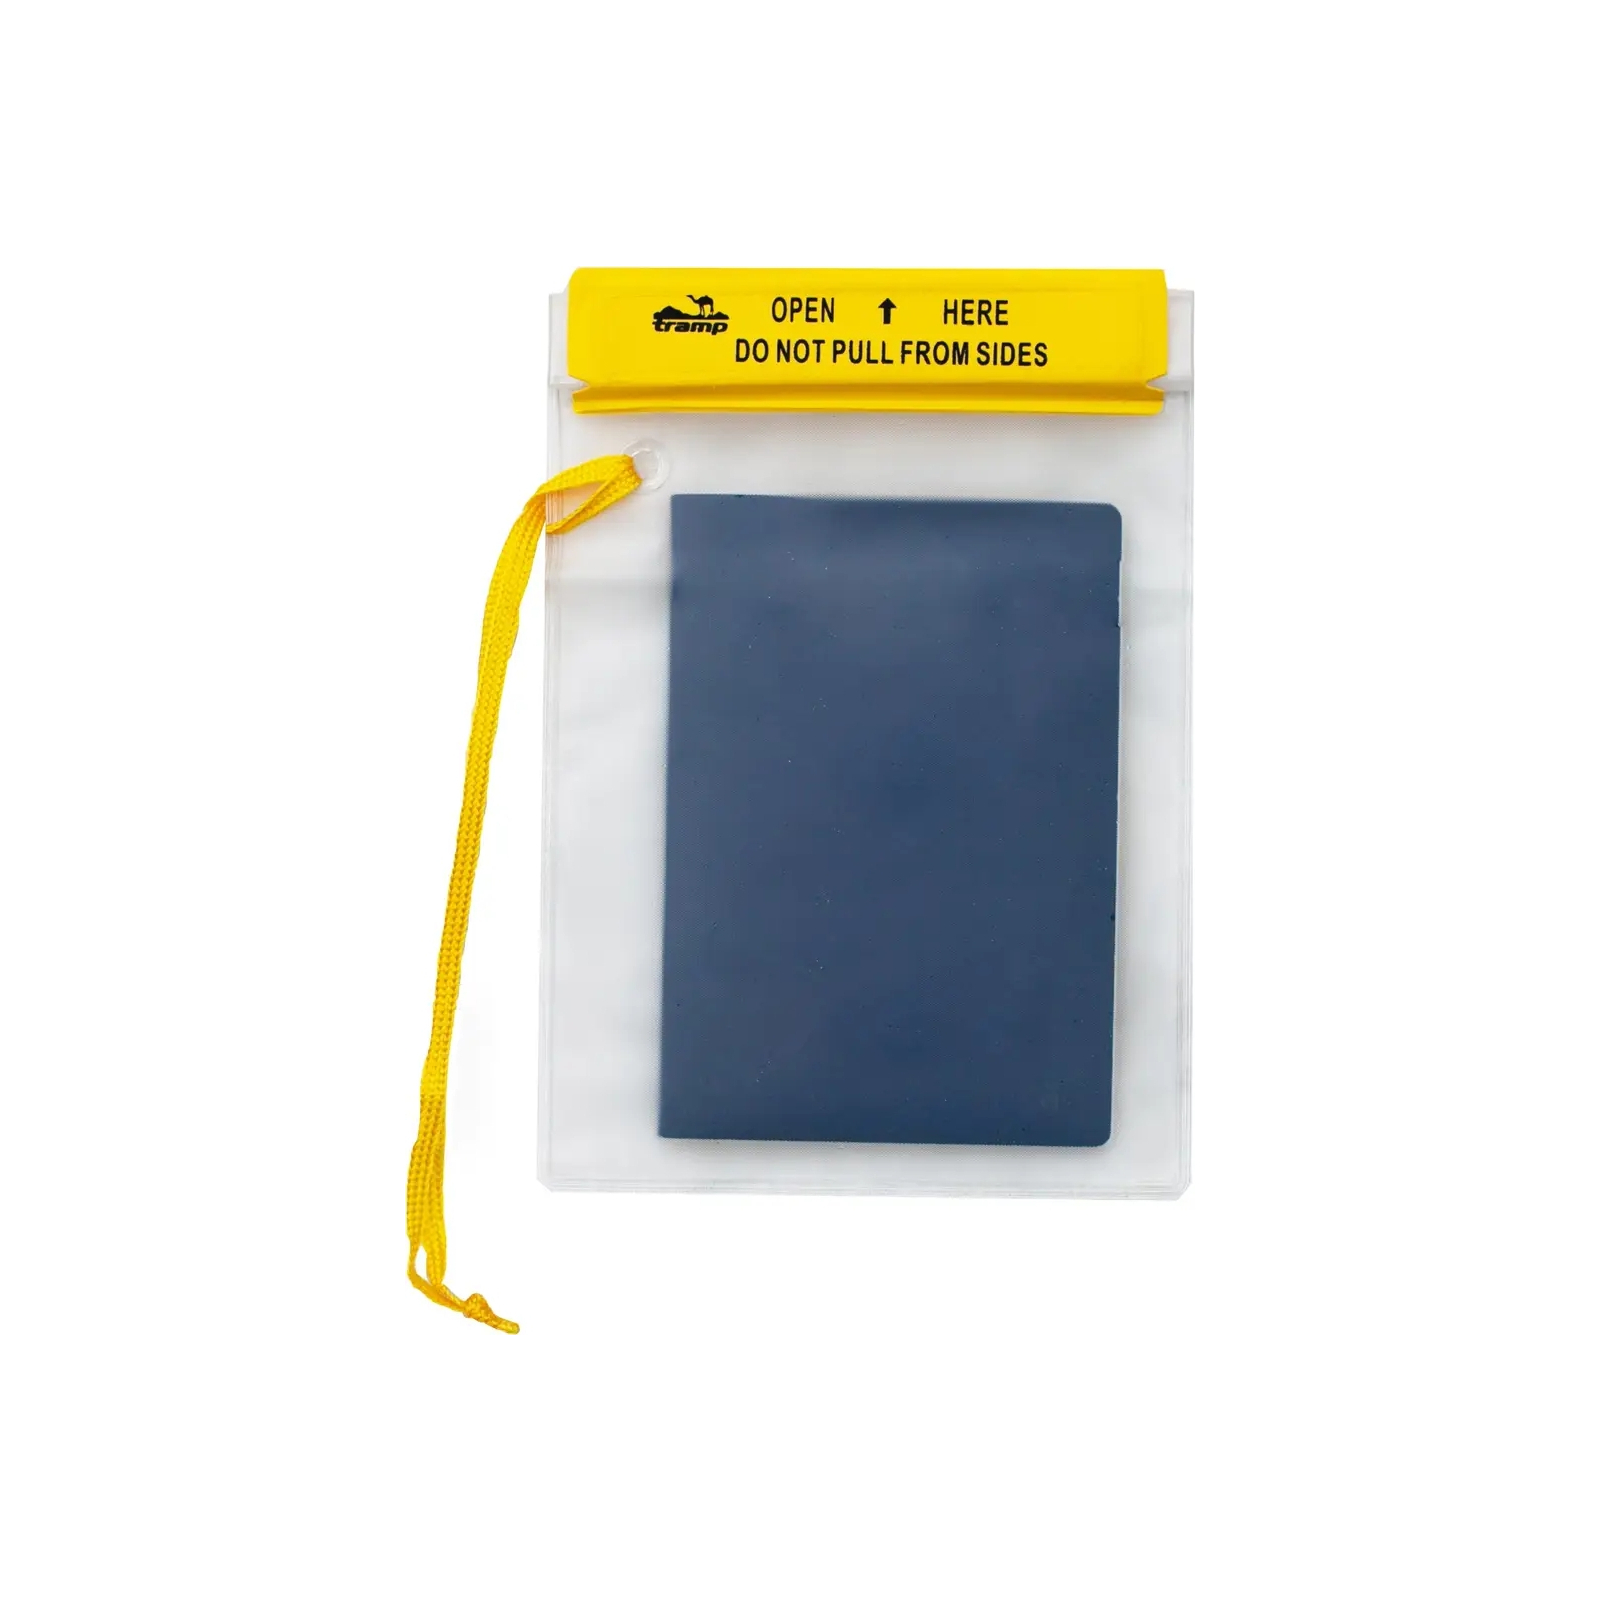 Гермопакет Tramp PVC transparent 12,7 х 18,4 cm (UTRA-025) зображення 3